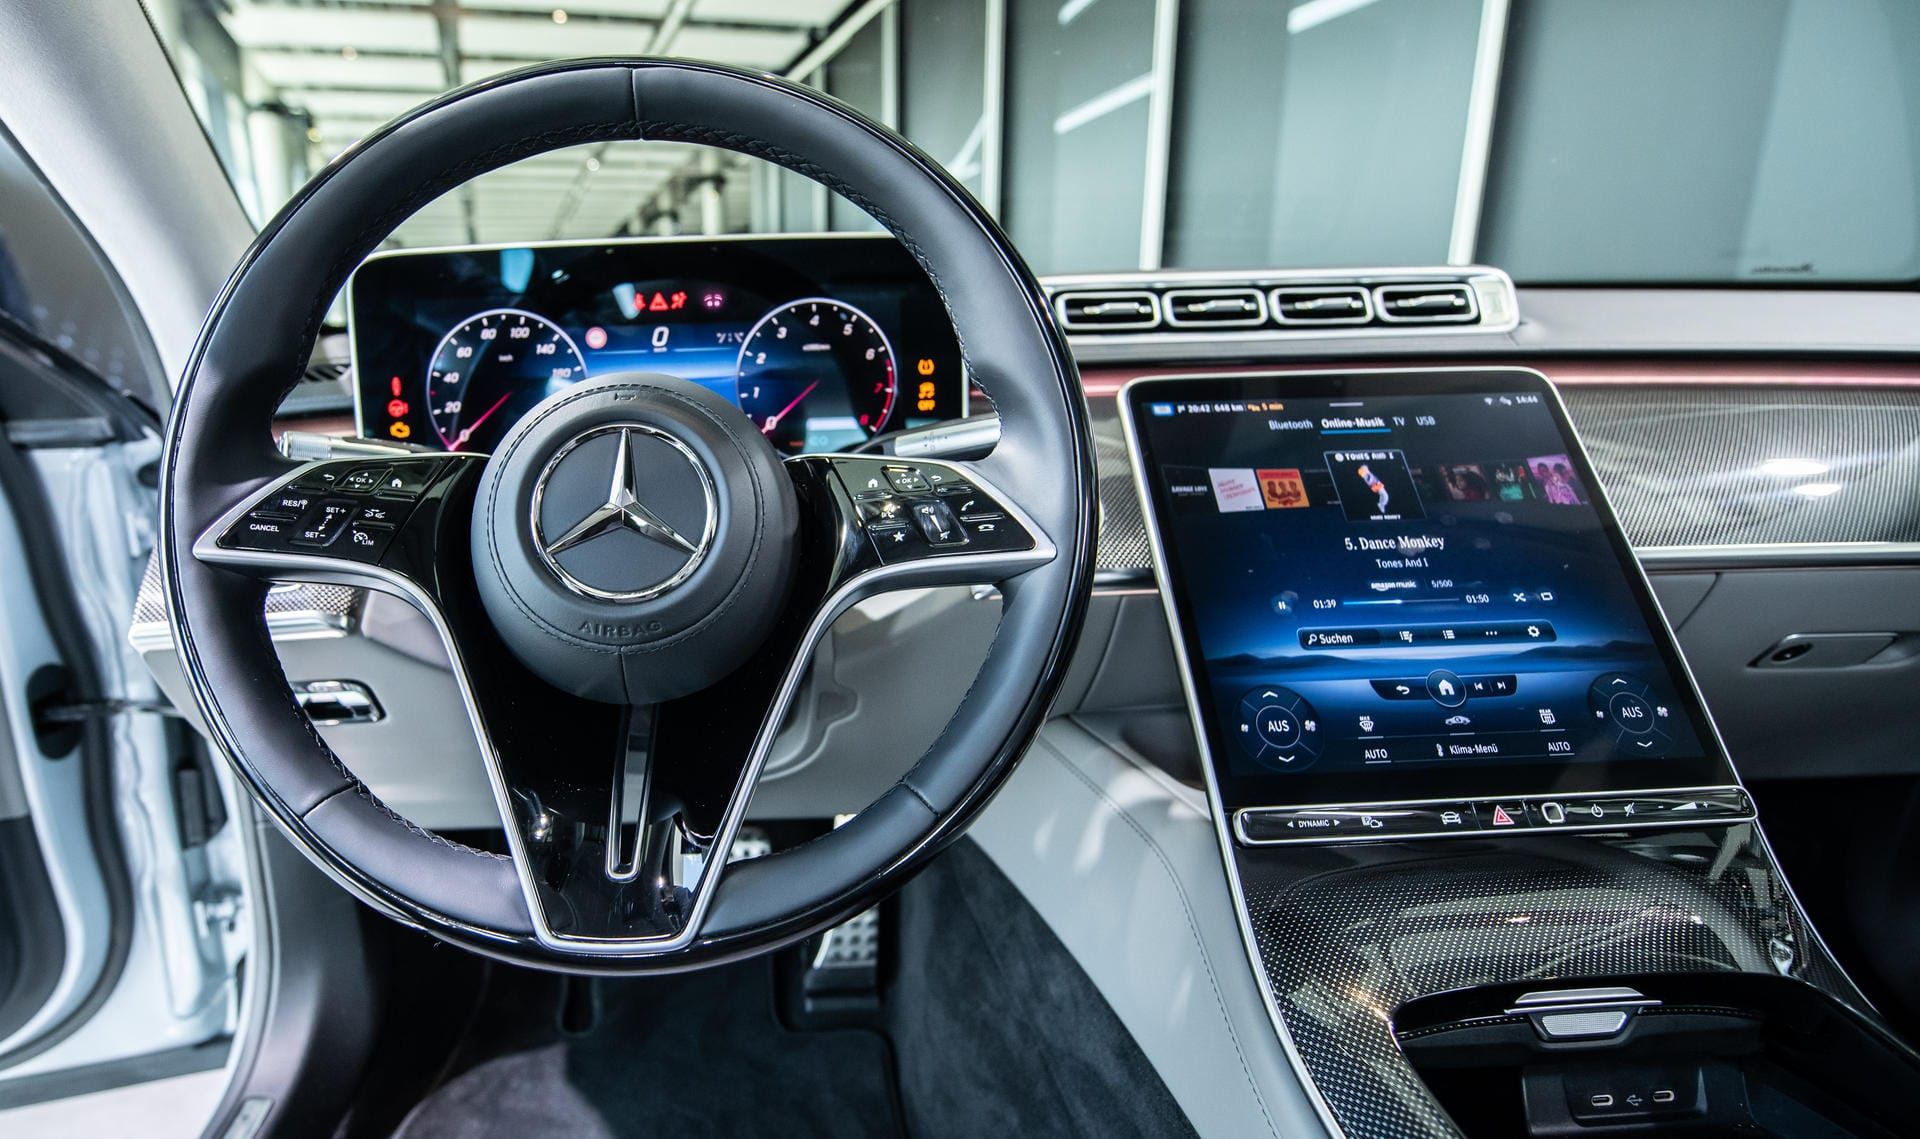 Zu den wichtigsten Innovationen der Luxuslimousine zählt Mercedes die nächste Generation des Infotainment-Systems MBUX mit neuer Bildschirmlandschaft, digitalem 3D-Cockpit, riesigem Head-up-Display und vorausschauendem Interieur-Assistenten.